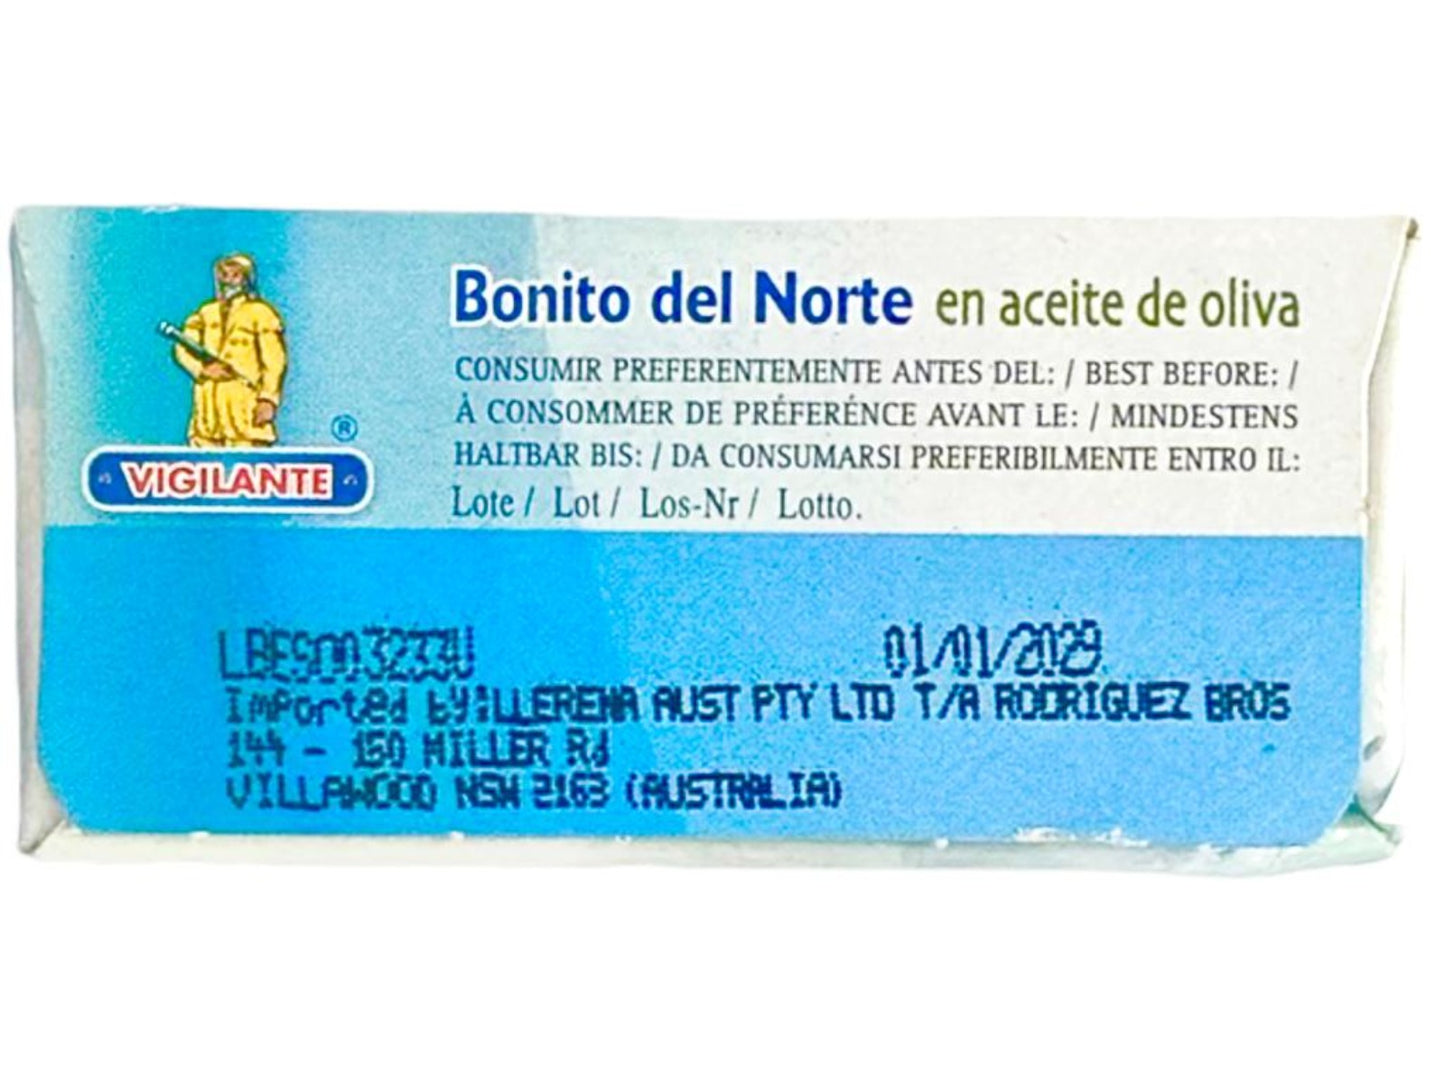 Vigilante Bonito del Norte en Aceite de Oliva Spain - White Tuna in Olive Oil 115g